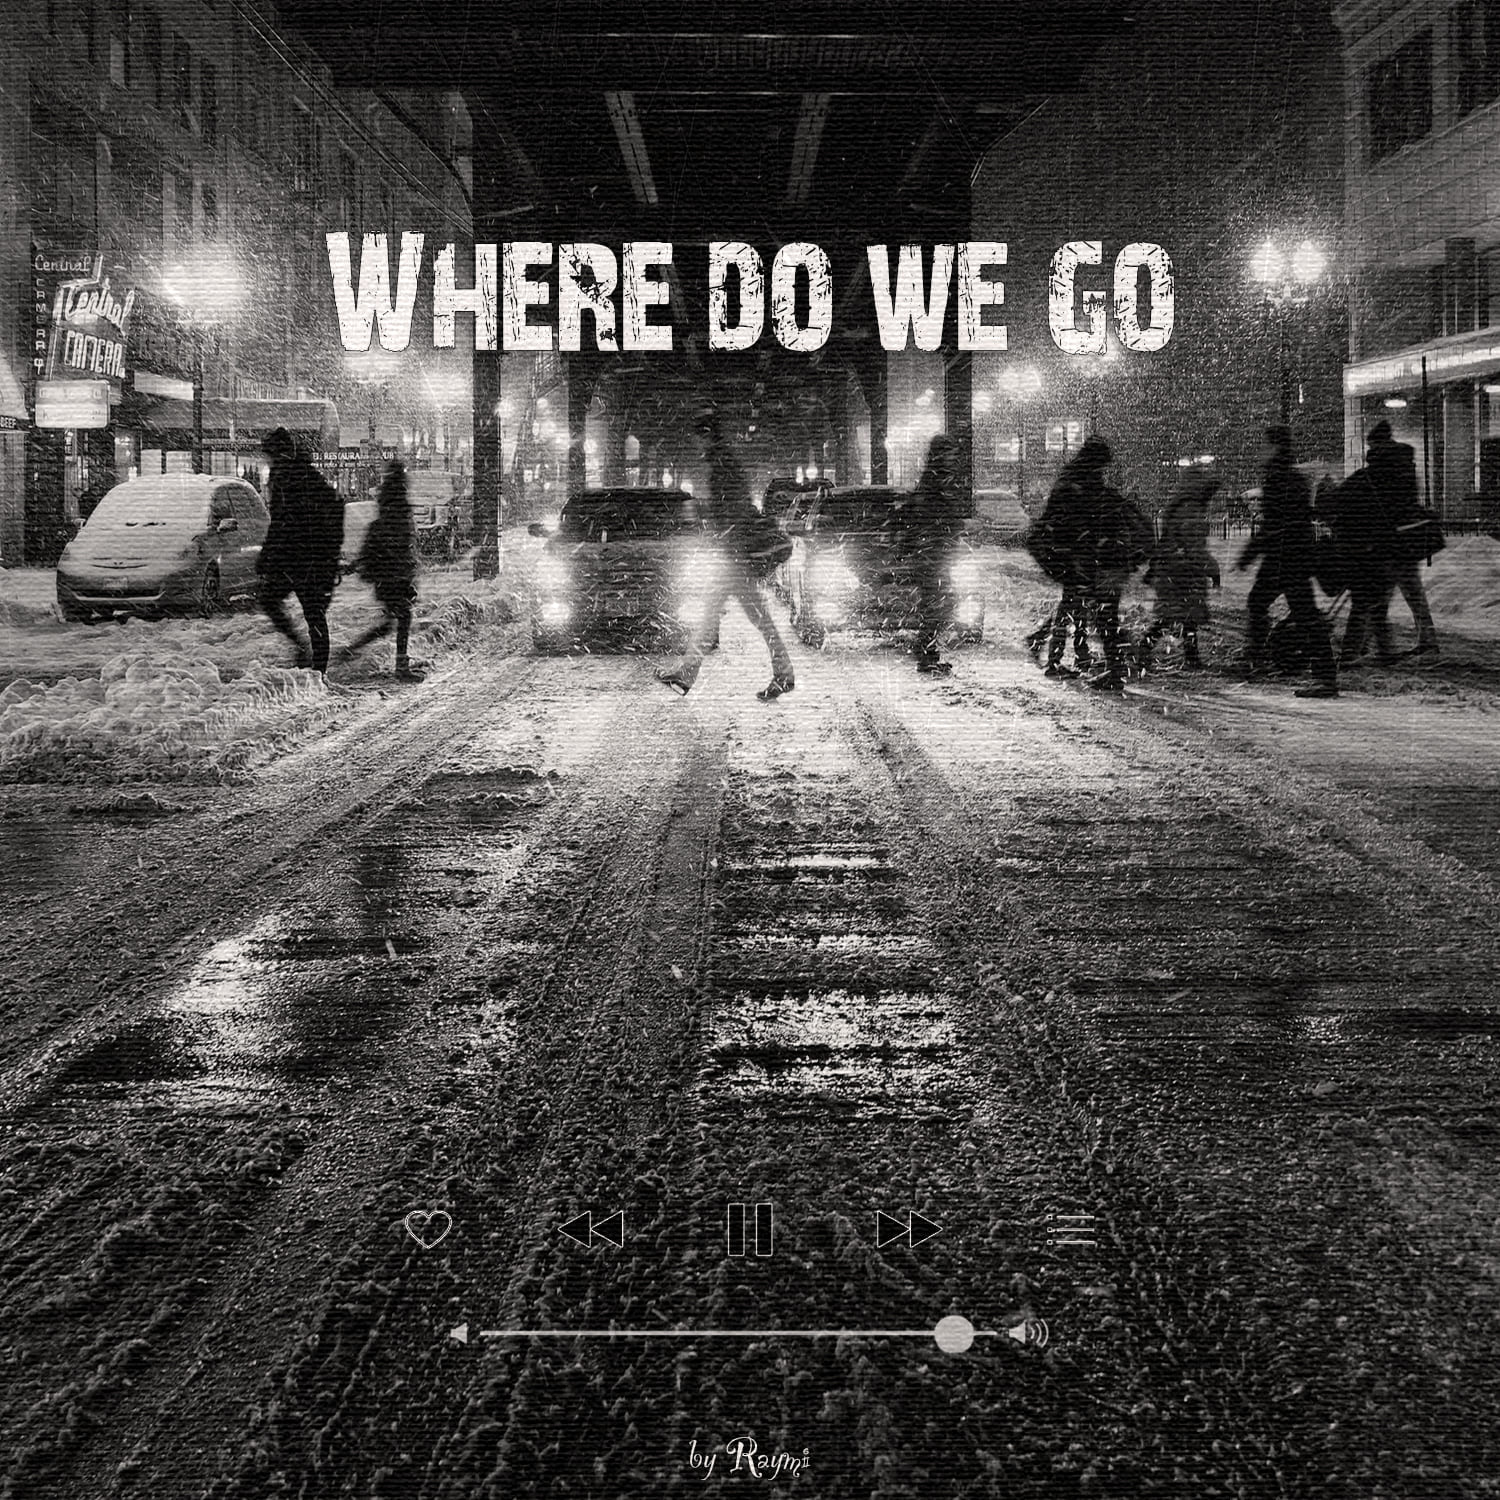 обложка бита, Raymi, музыка, cover, Where do we go (качевый, решительный hip-hop бит)